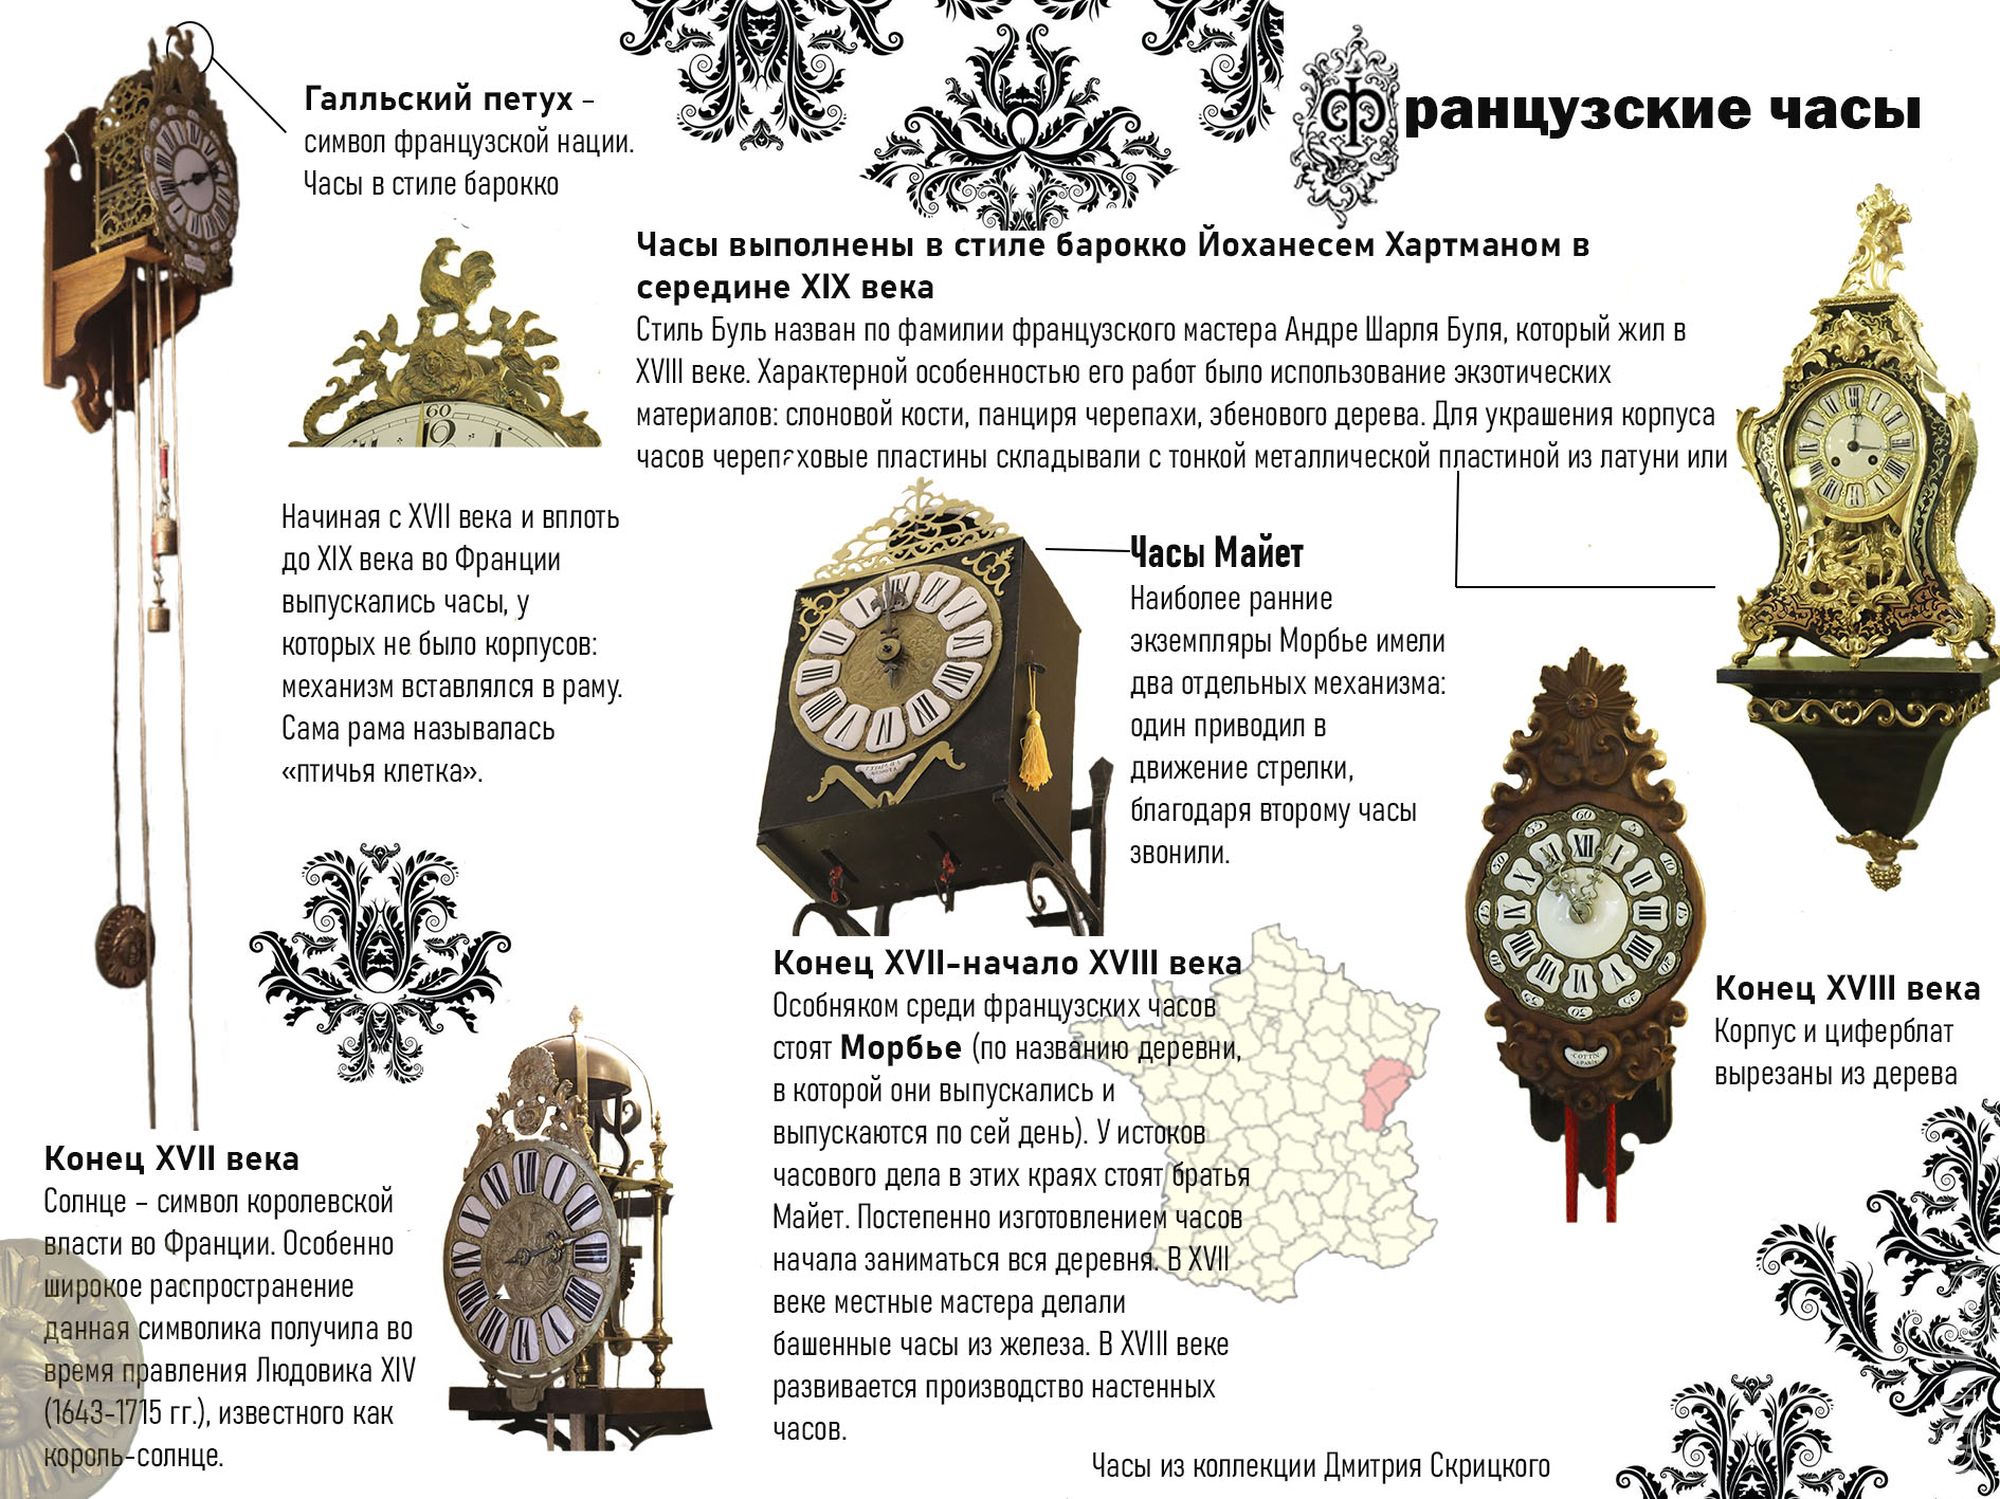 Французские часы из коллекции Дмитрия Скрицкого